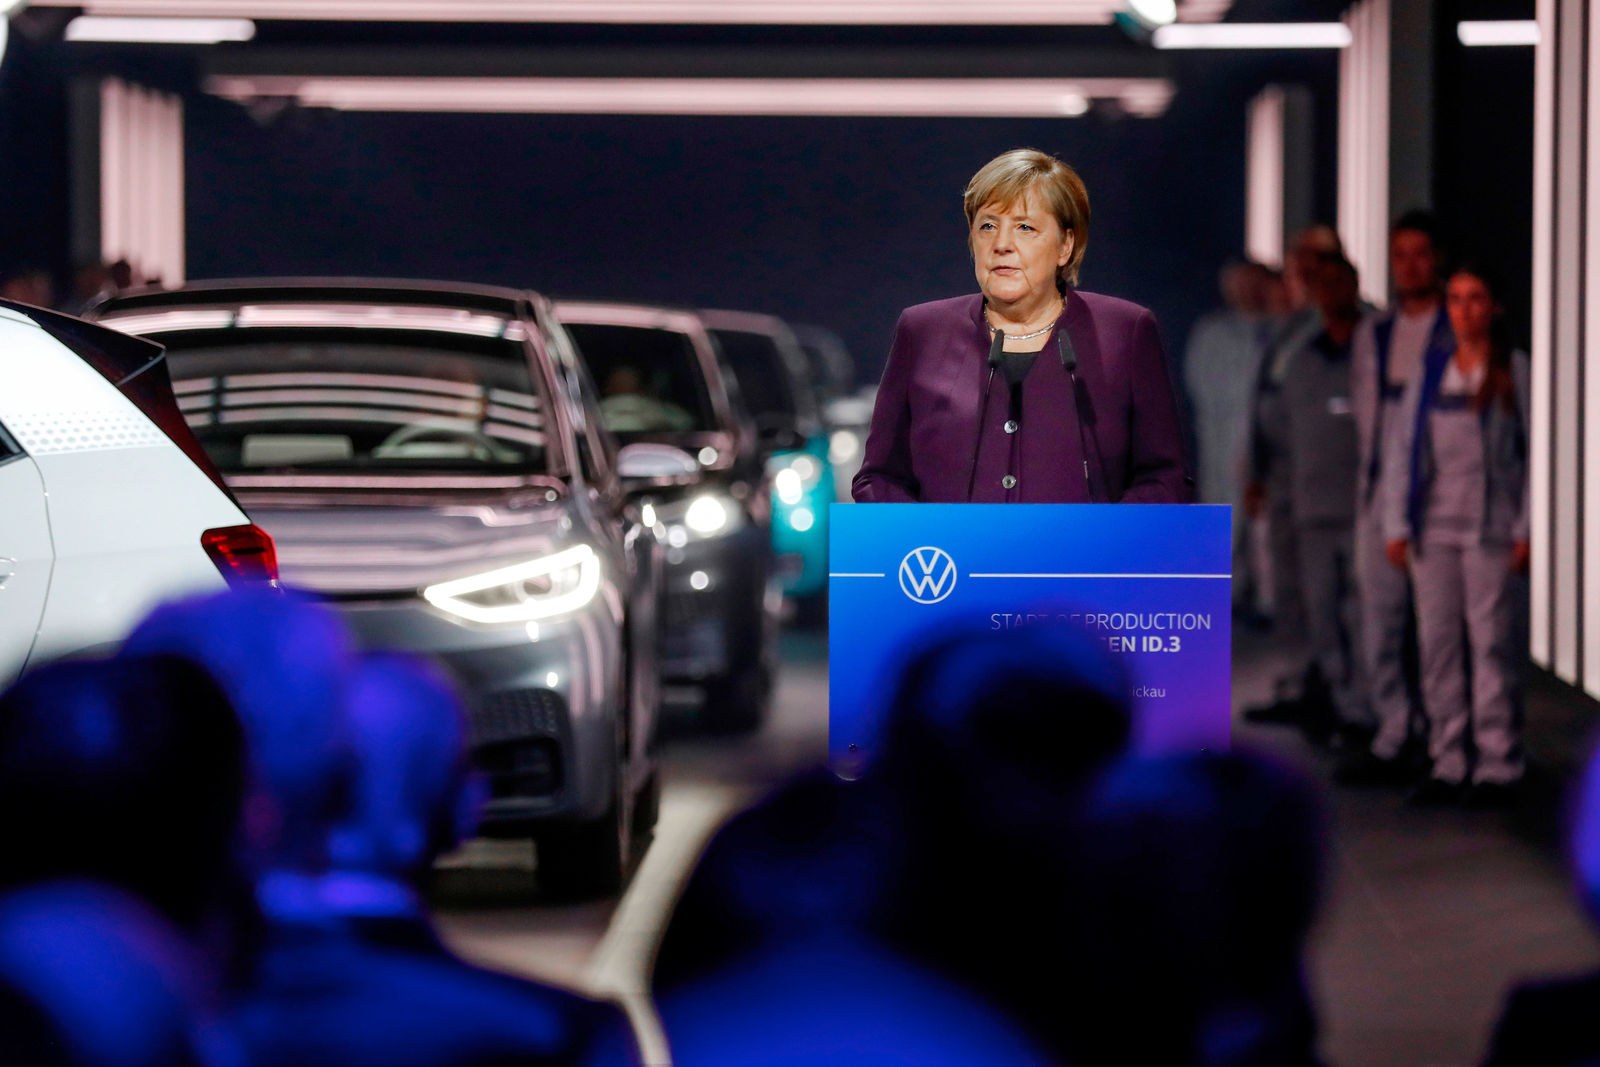 Volkswagen leitet Systemwechsel zur E-Mobilität ein: Produktionsstart des ID.3 in Zwickau